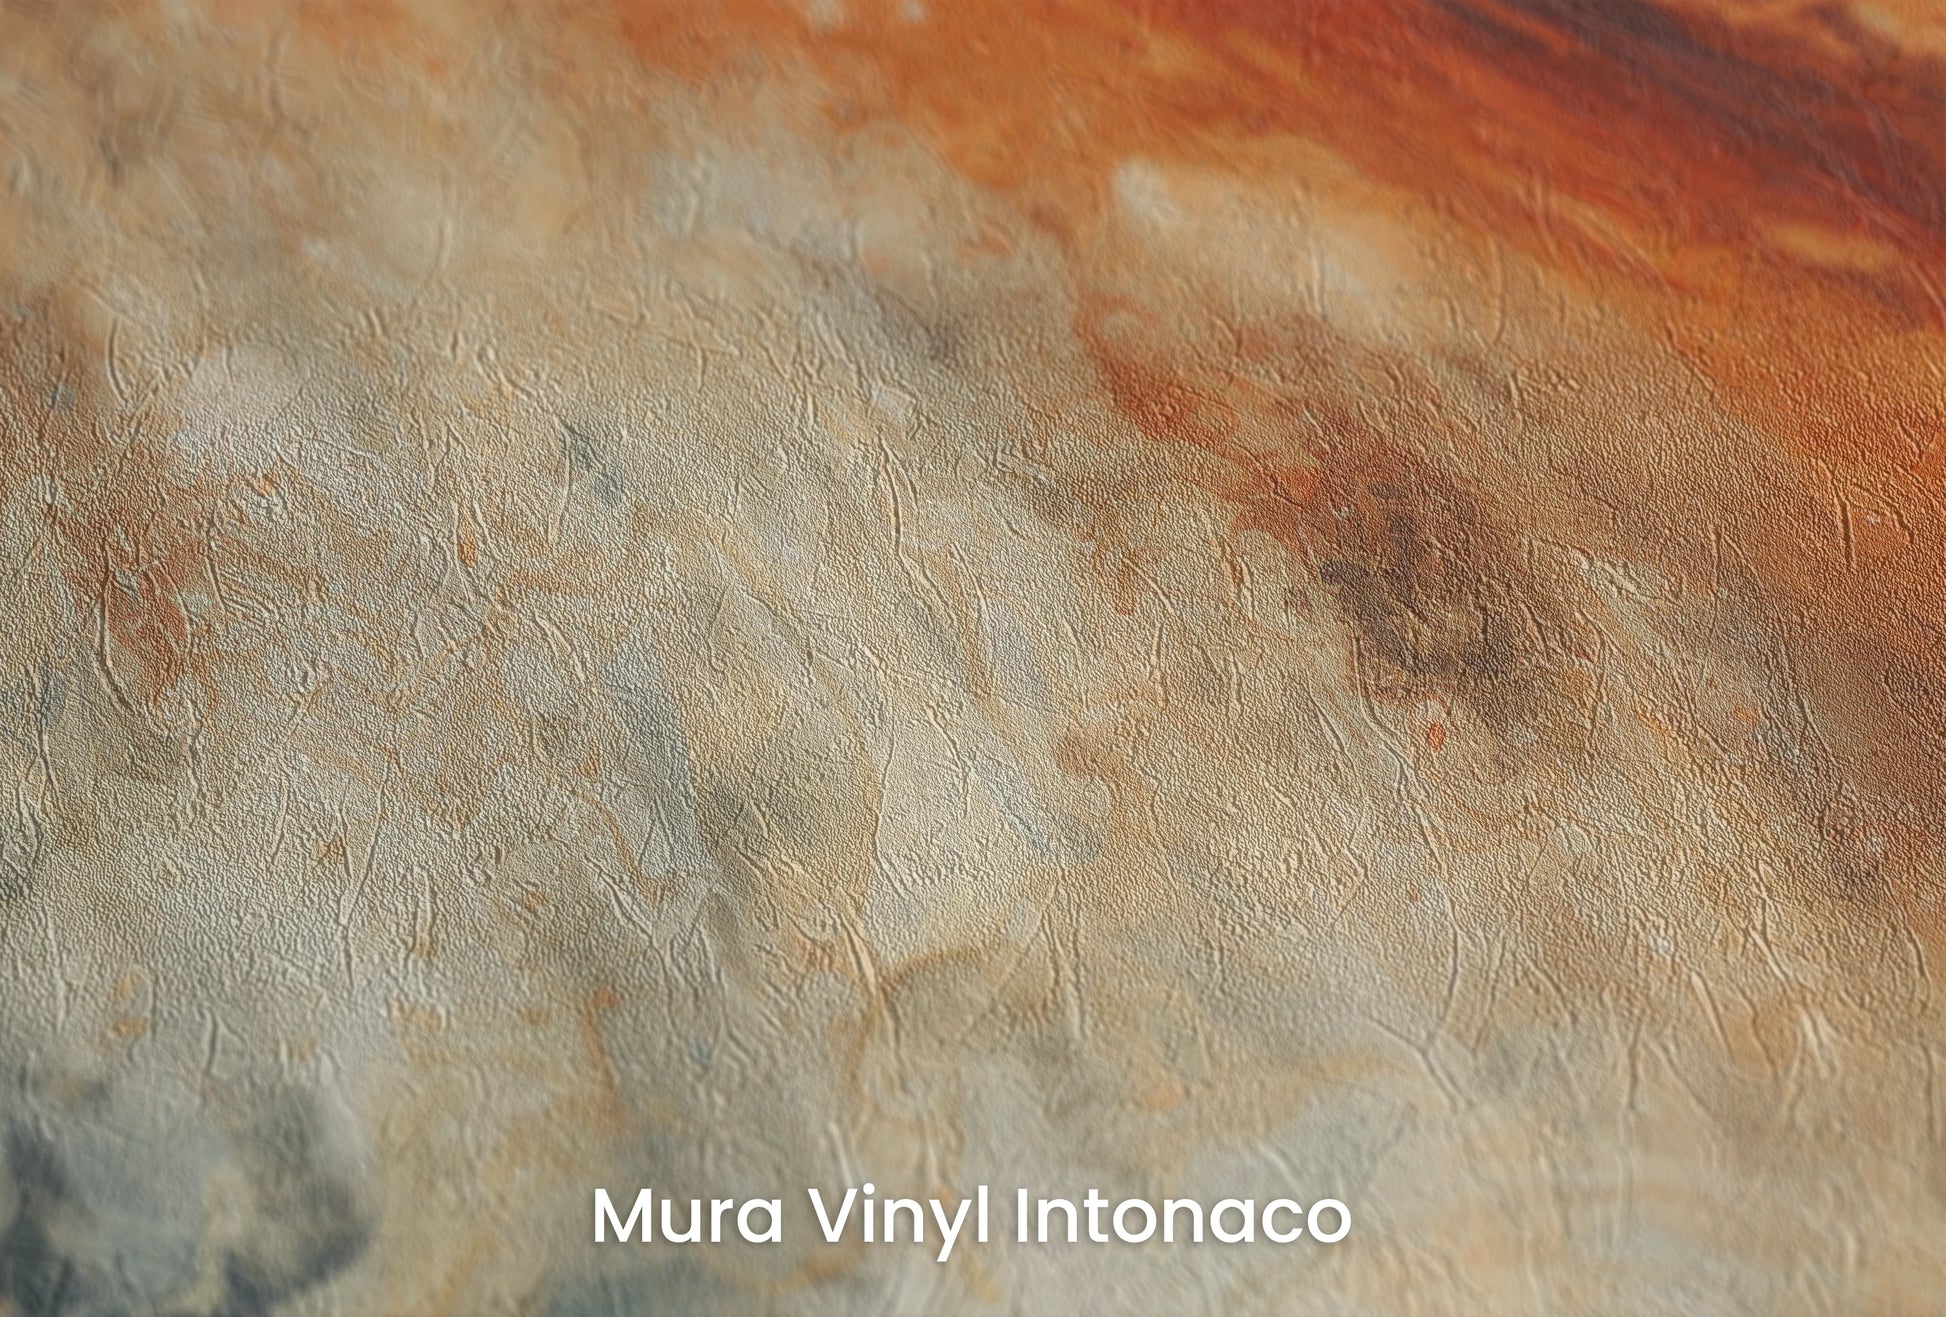 Zbliżenie na artystyczną fototapetę o nazwie Jupiter's Storm na podłożu Mura Vinyl Intonaco - struktura tartego tynku.